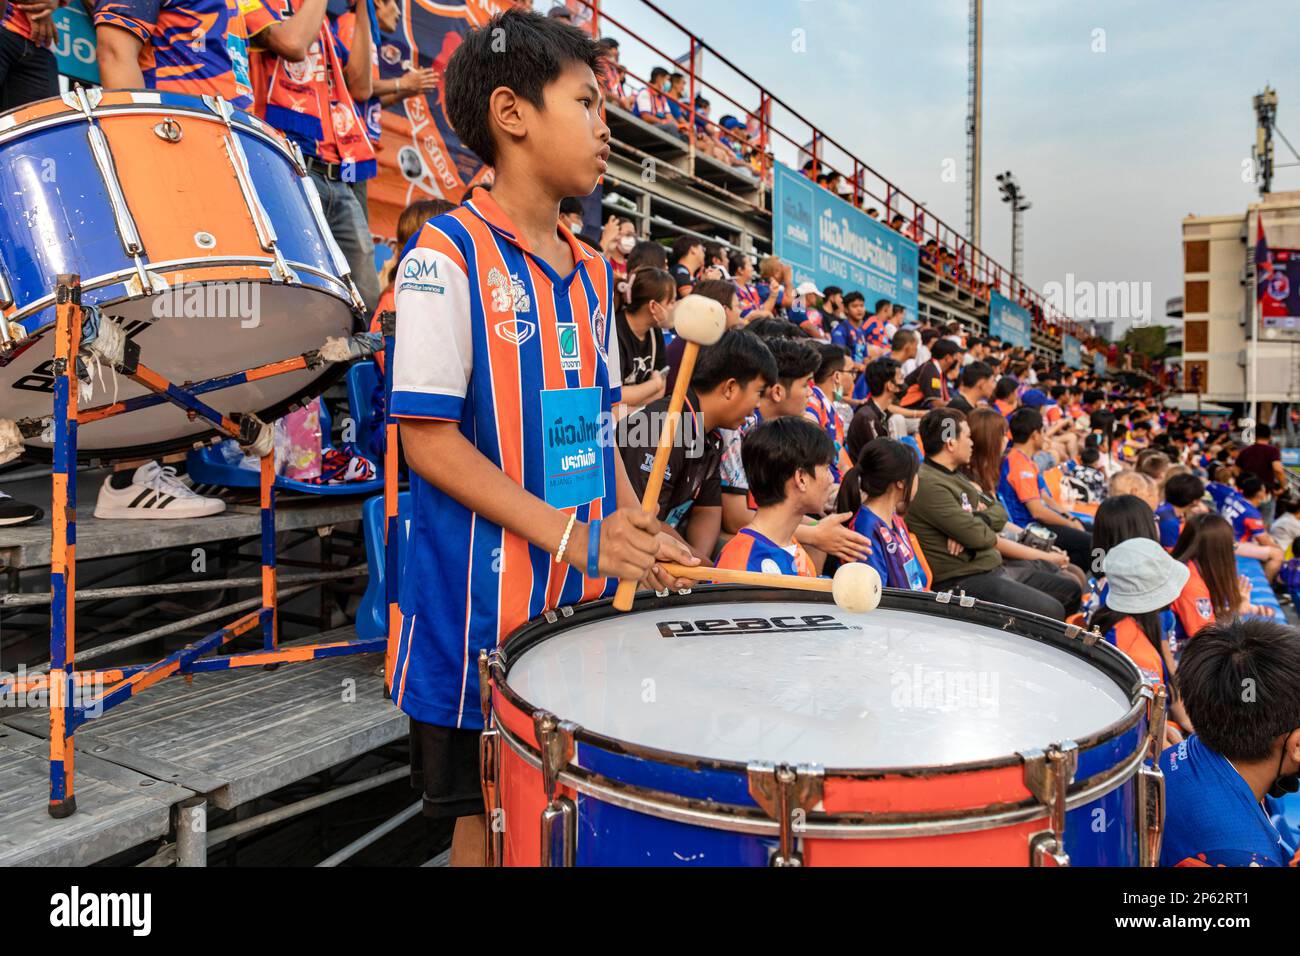 Unterstützer-Band spielt Instrumente und Schlagzeug beim thailändischen Fußballspiel, PAT Stadium, Bangkok, Thailand Stockfoto